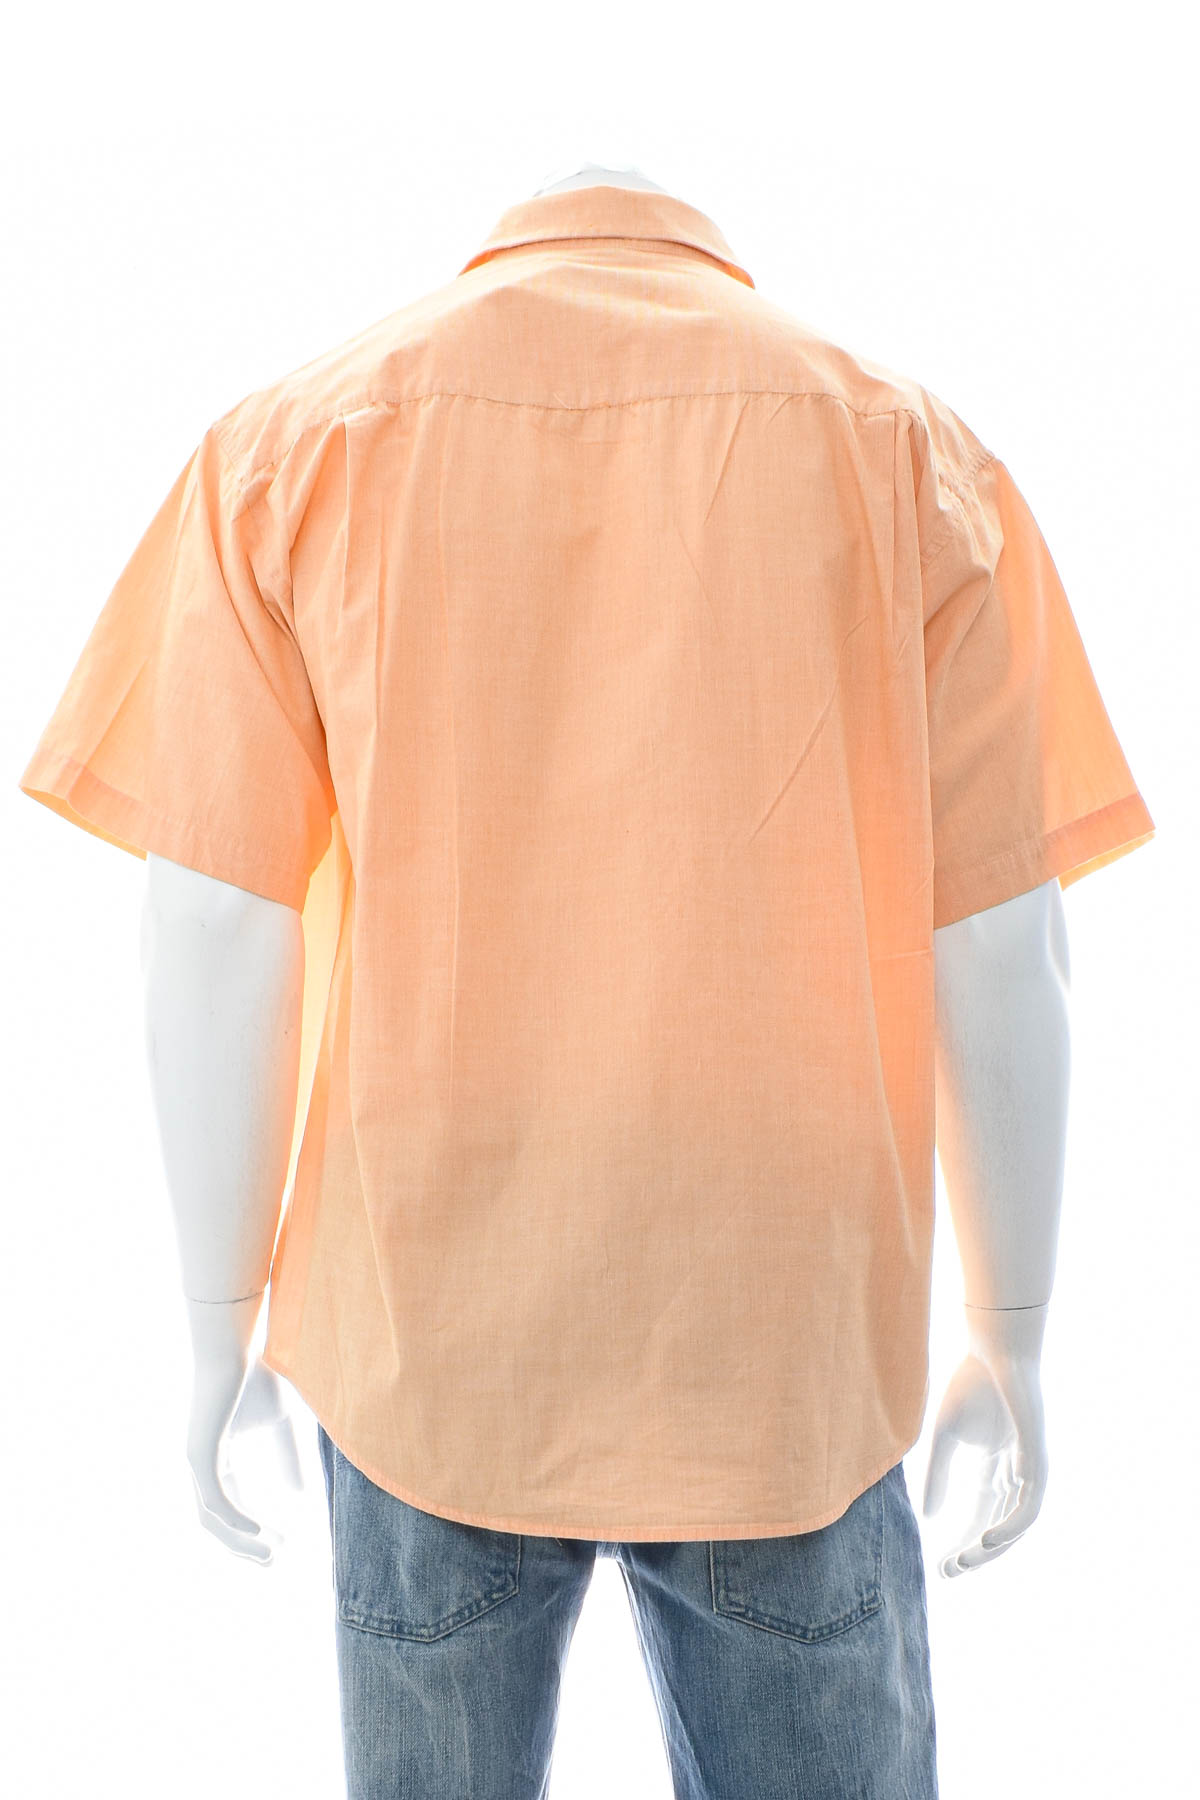 Ανδρικό πουκάμισο - Torelli - 1